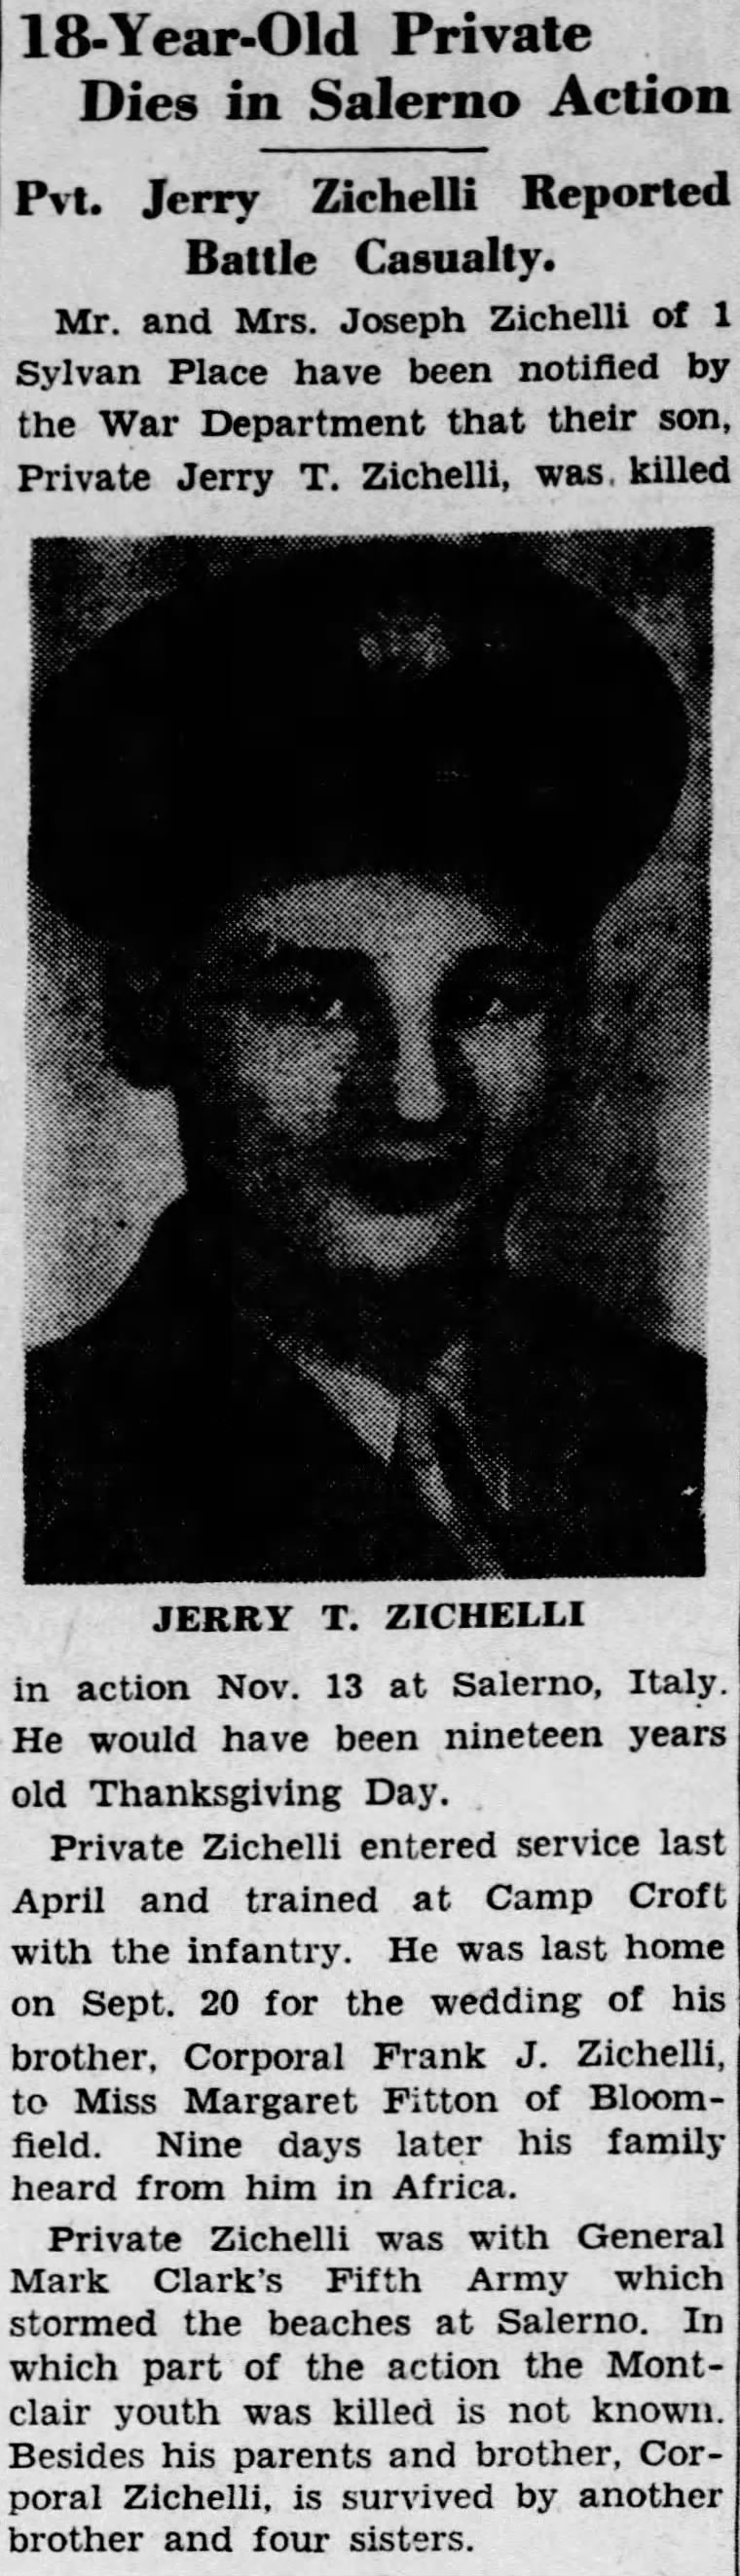 J. Zichelli